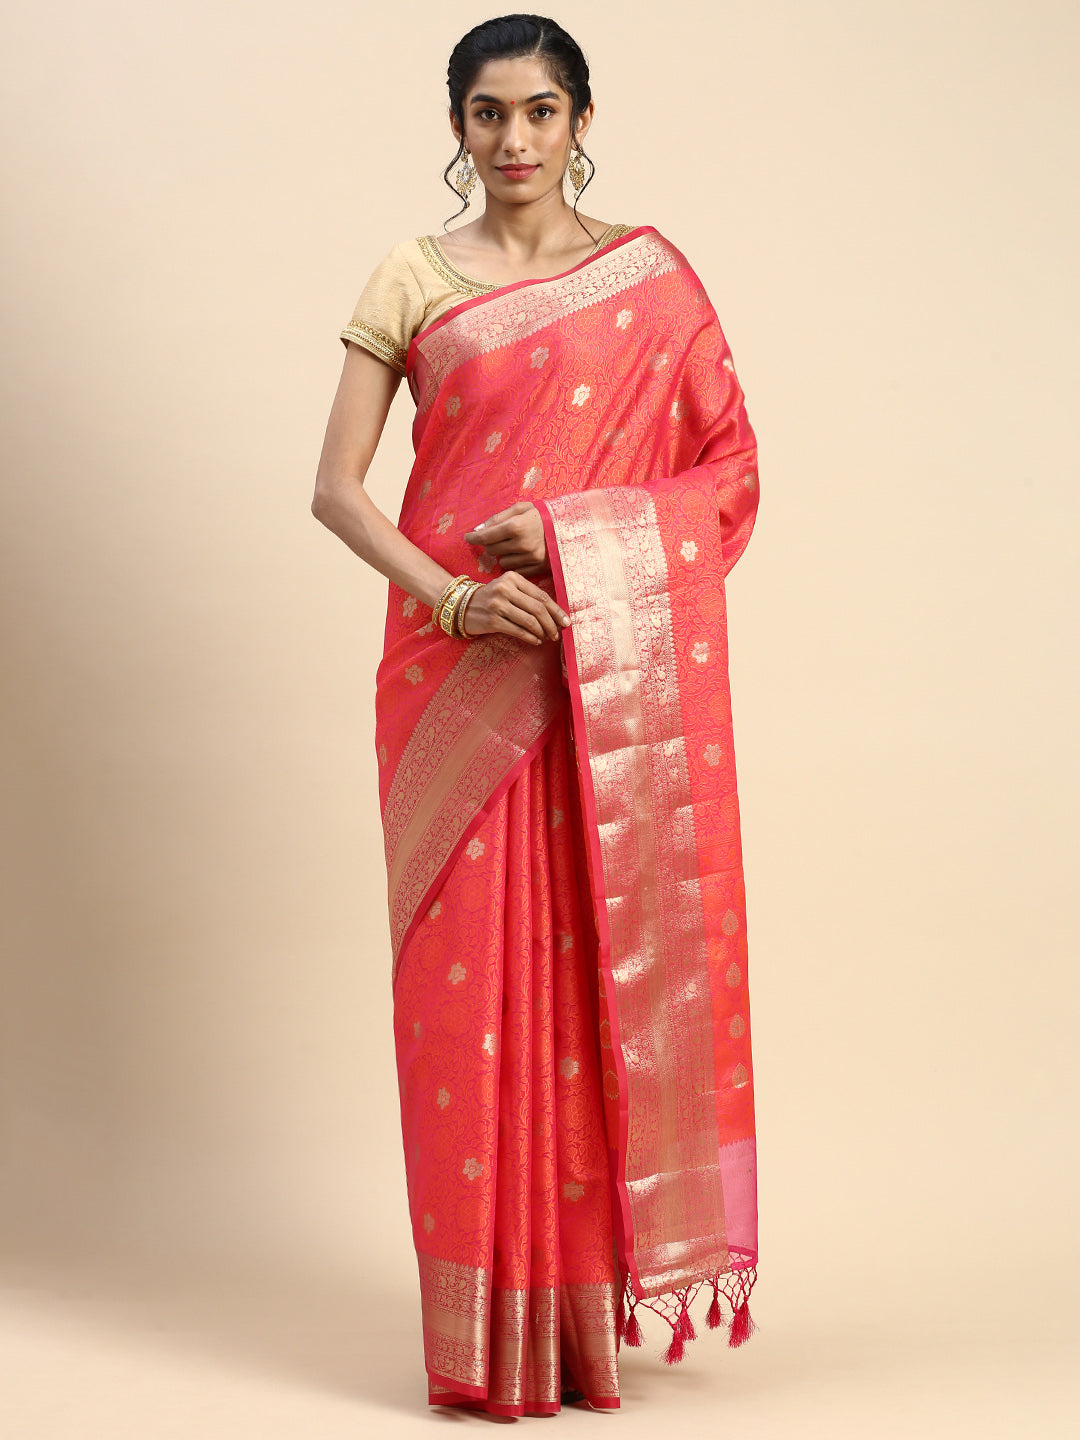 8 Onion pink ideas  elegant saree, saree styles, saree designs